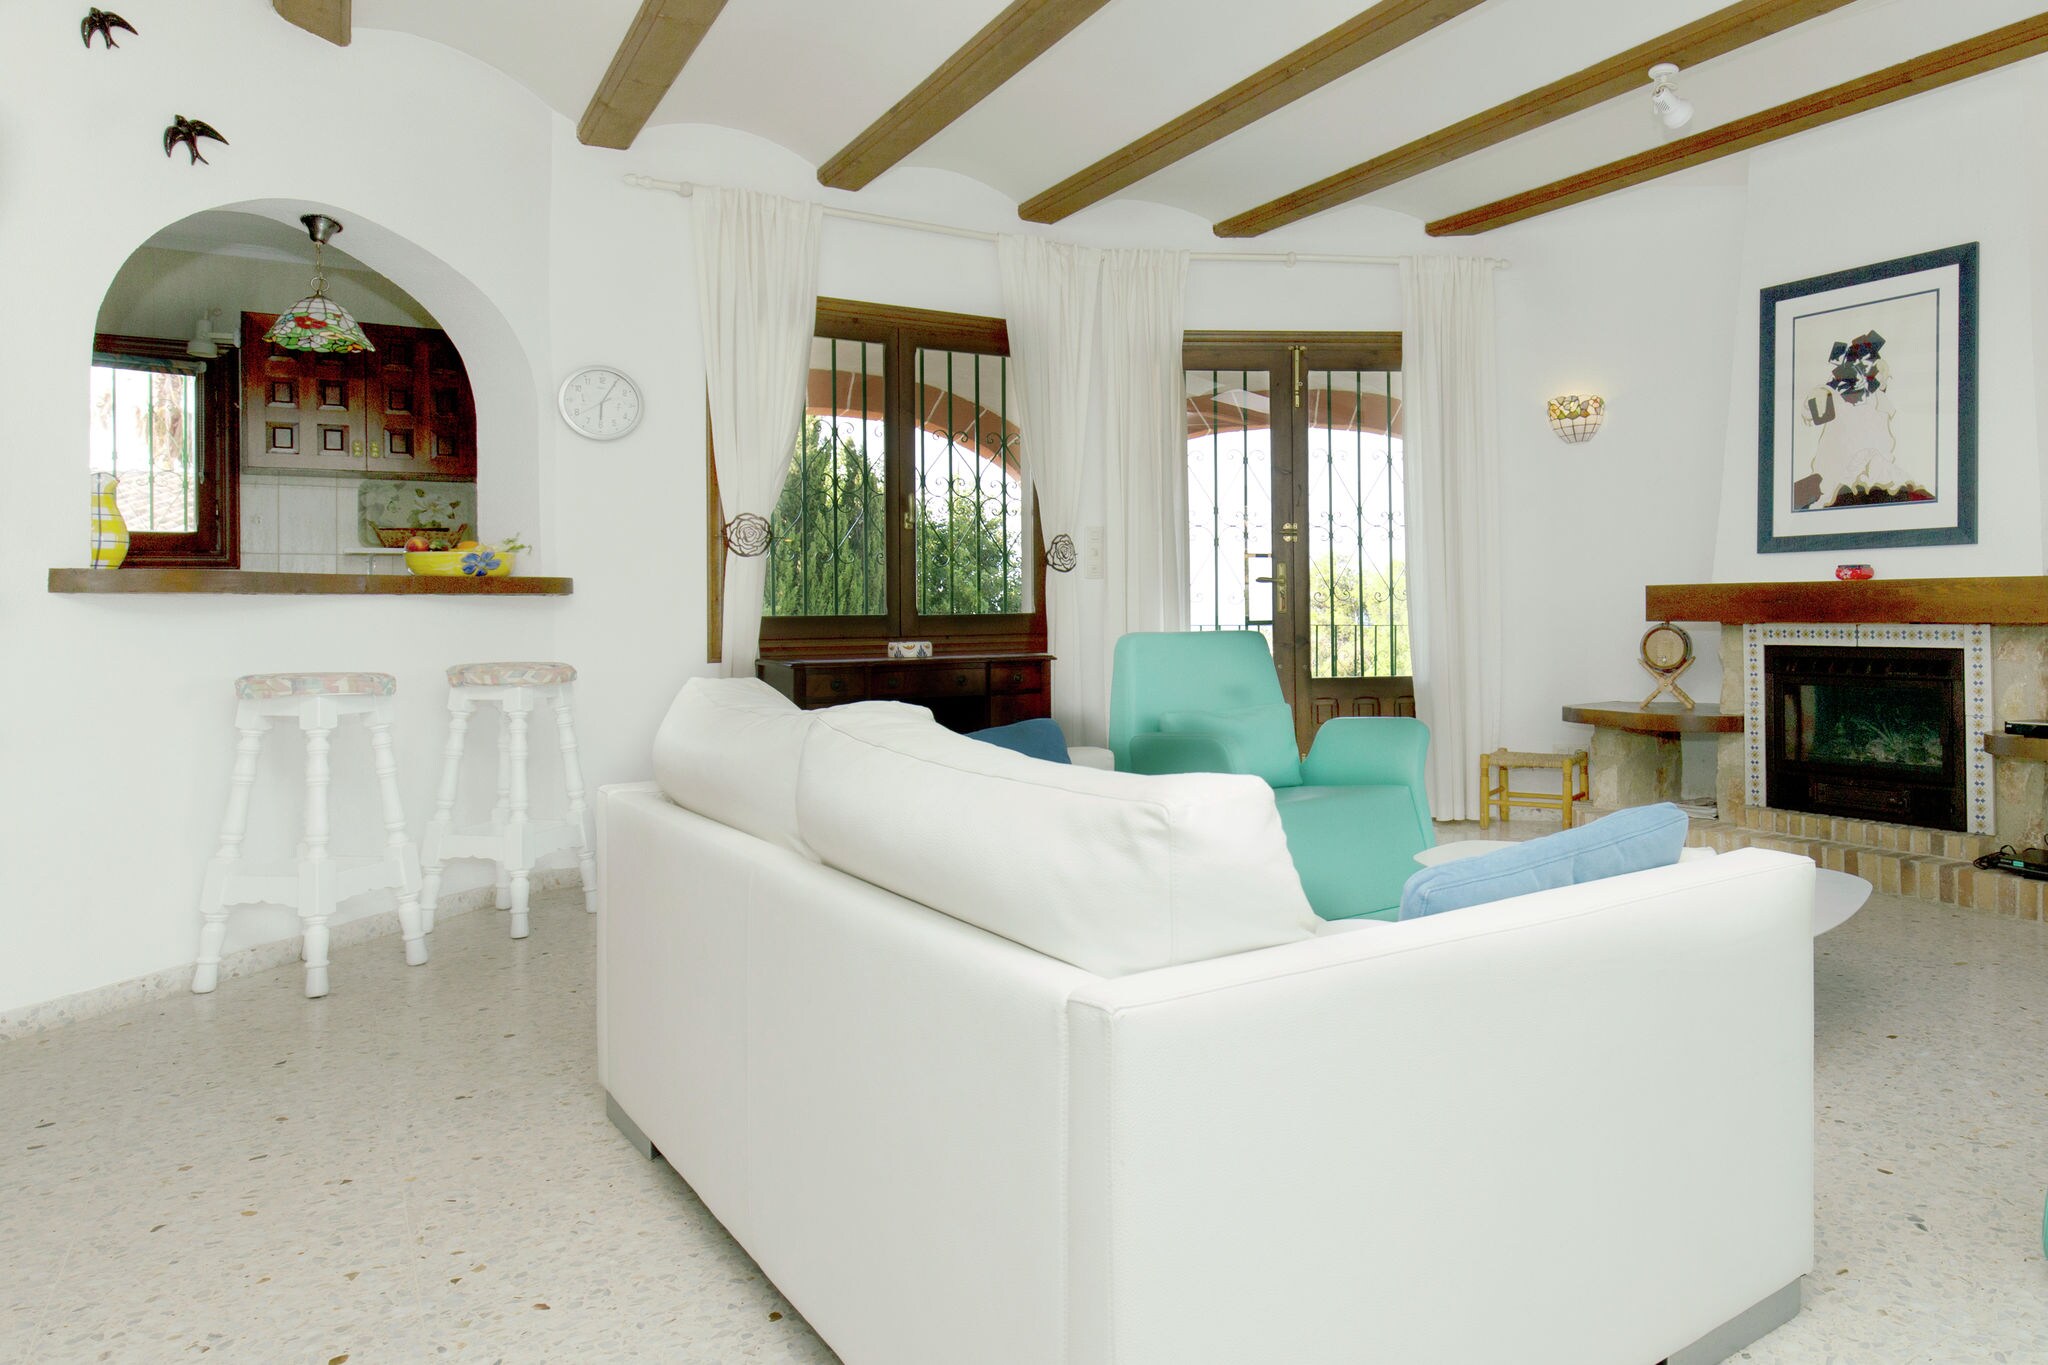 Betoverende villa in Denia Costa Blanca met privé zwembad 2 km van het strand